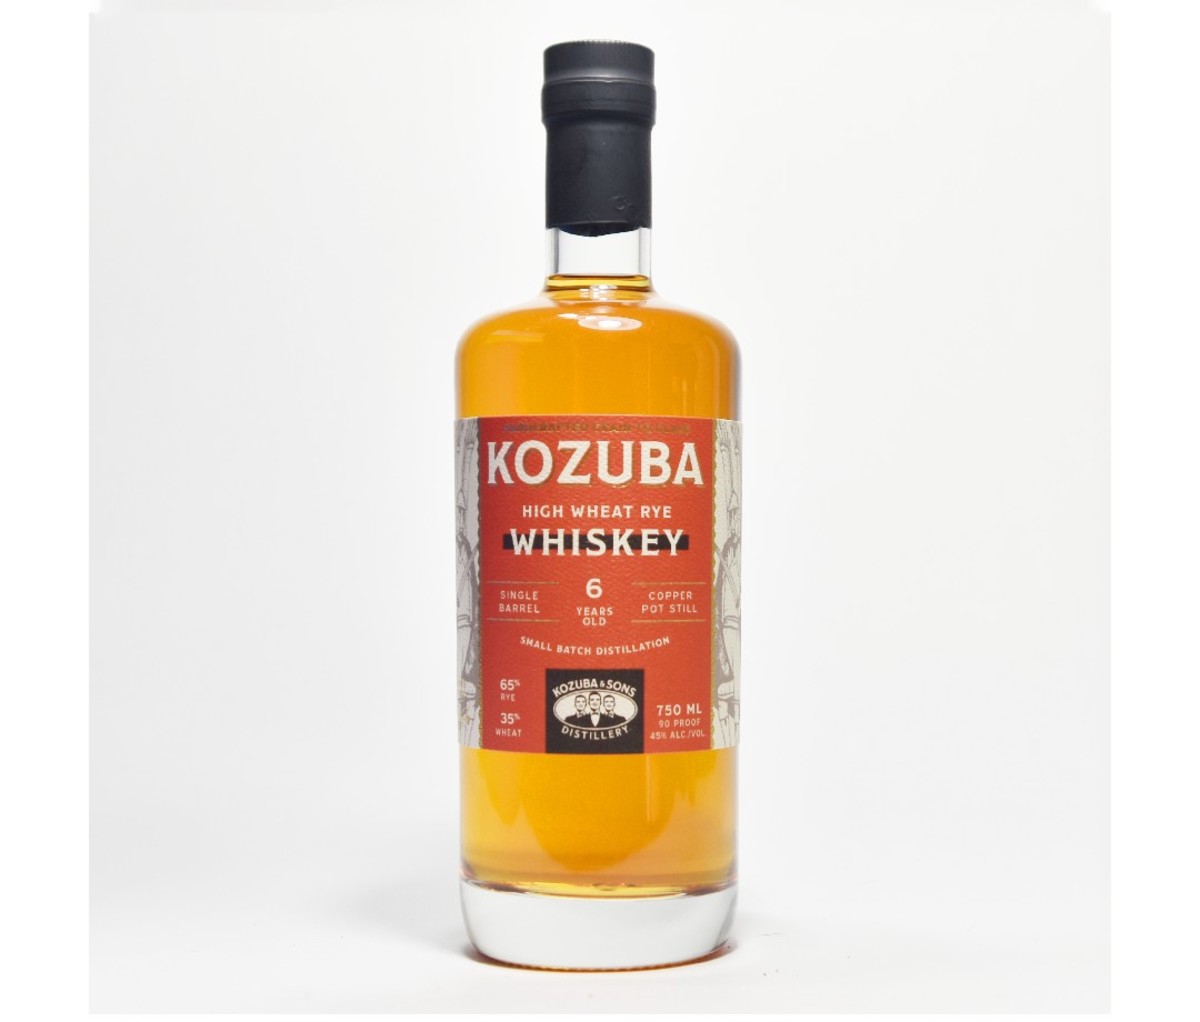 A bottle of Kozuba Distillery High Wheat Rye Whiskey.